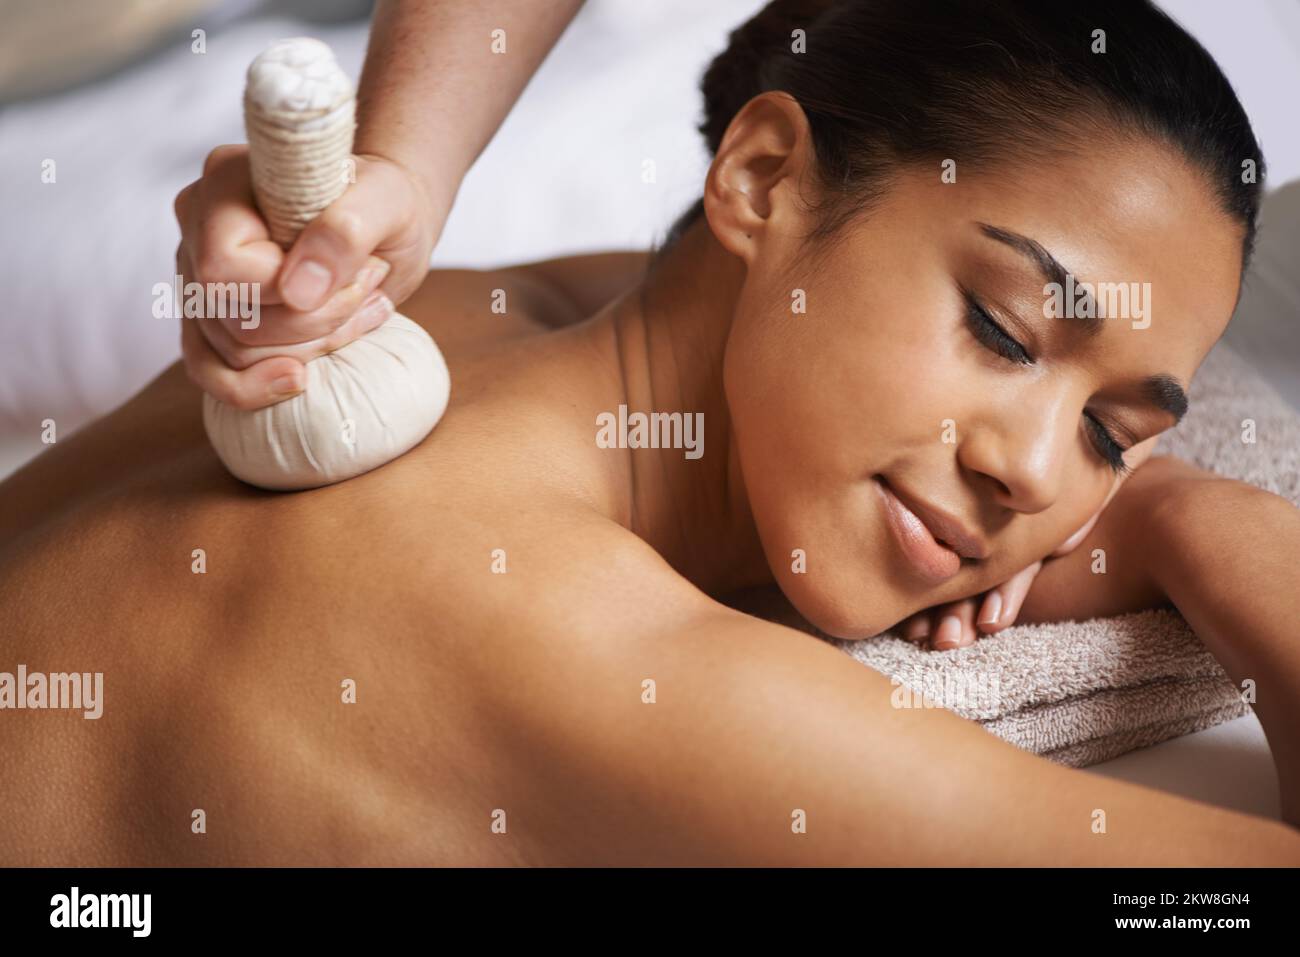 Salir de toda la ansiedad. una joven atractiva que disfruta de un masaje en el spa. Foto de stock